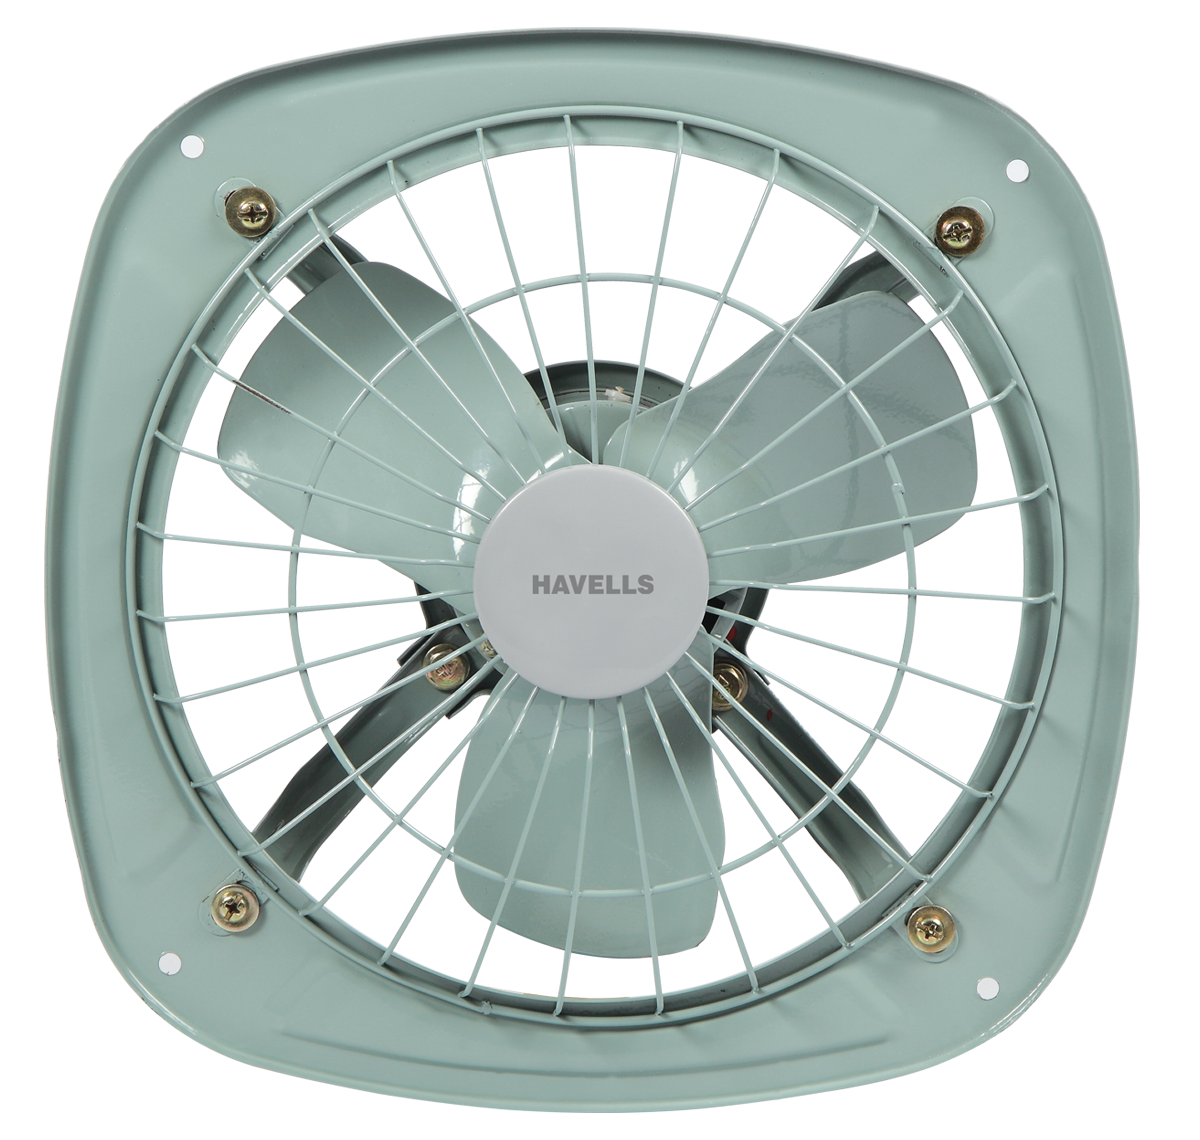 Havells Ventilair DSP 230mm Exhaust Fan